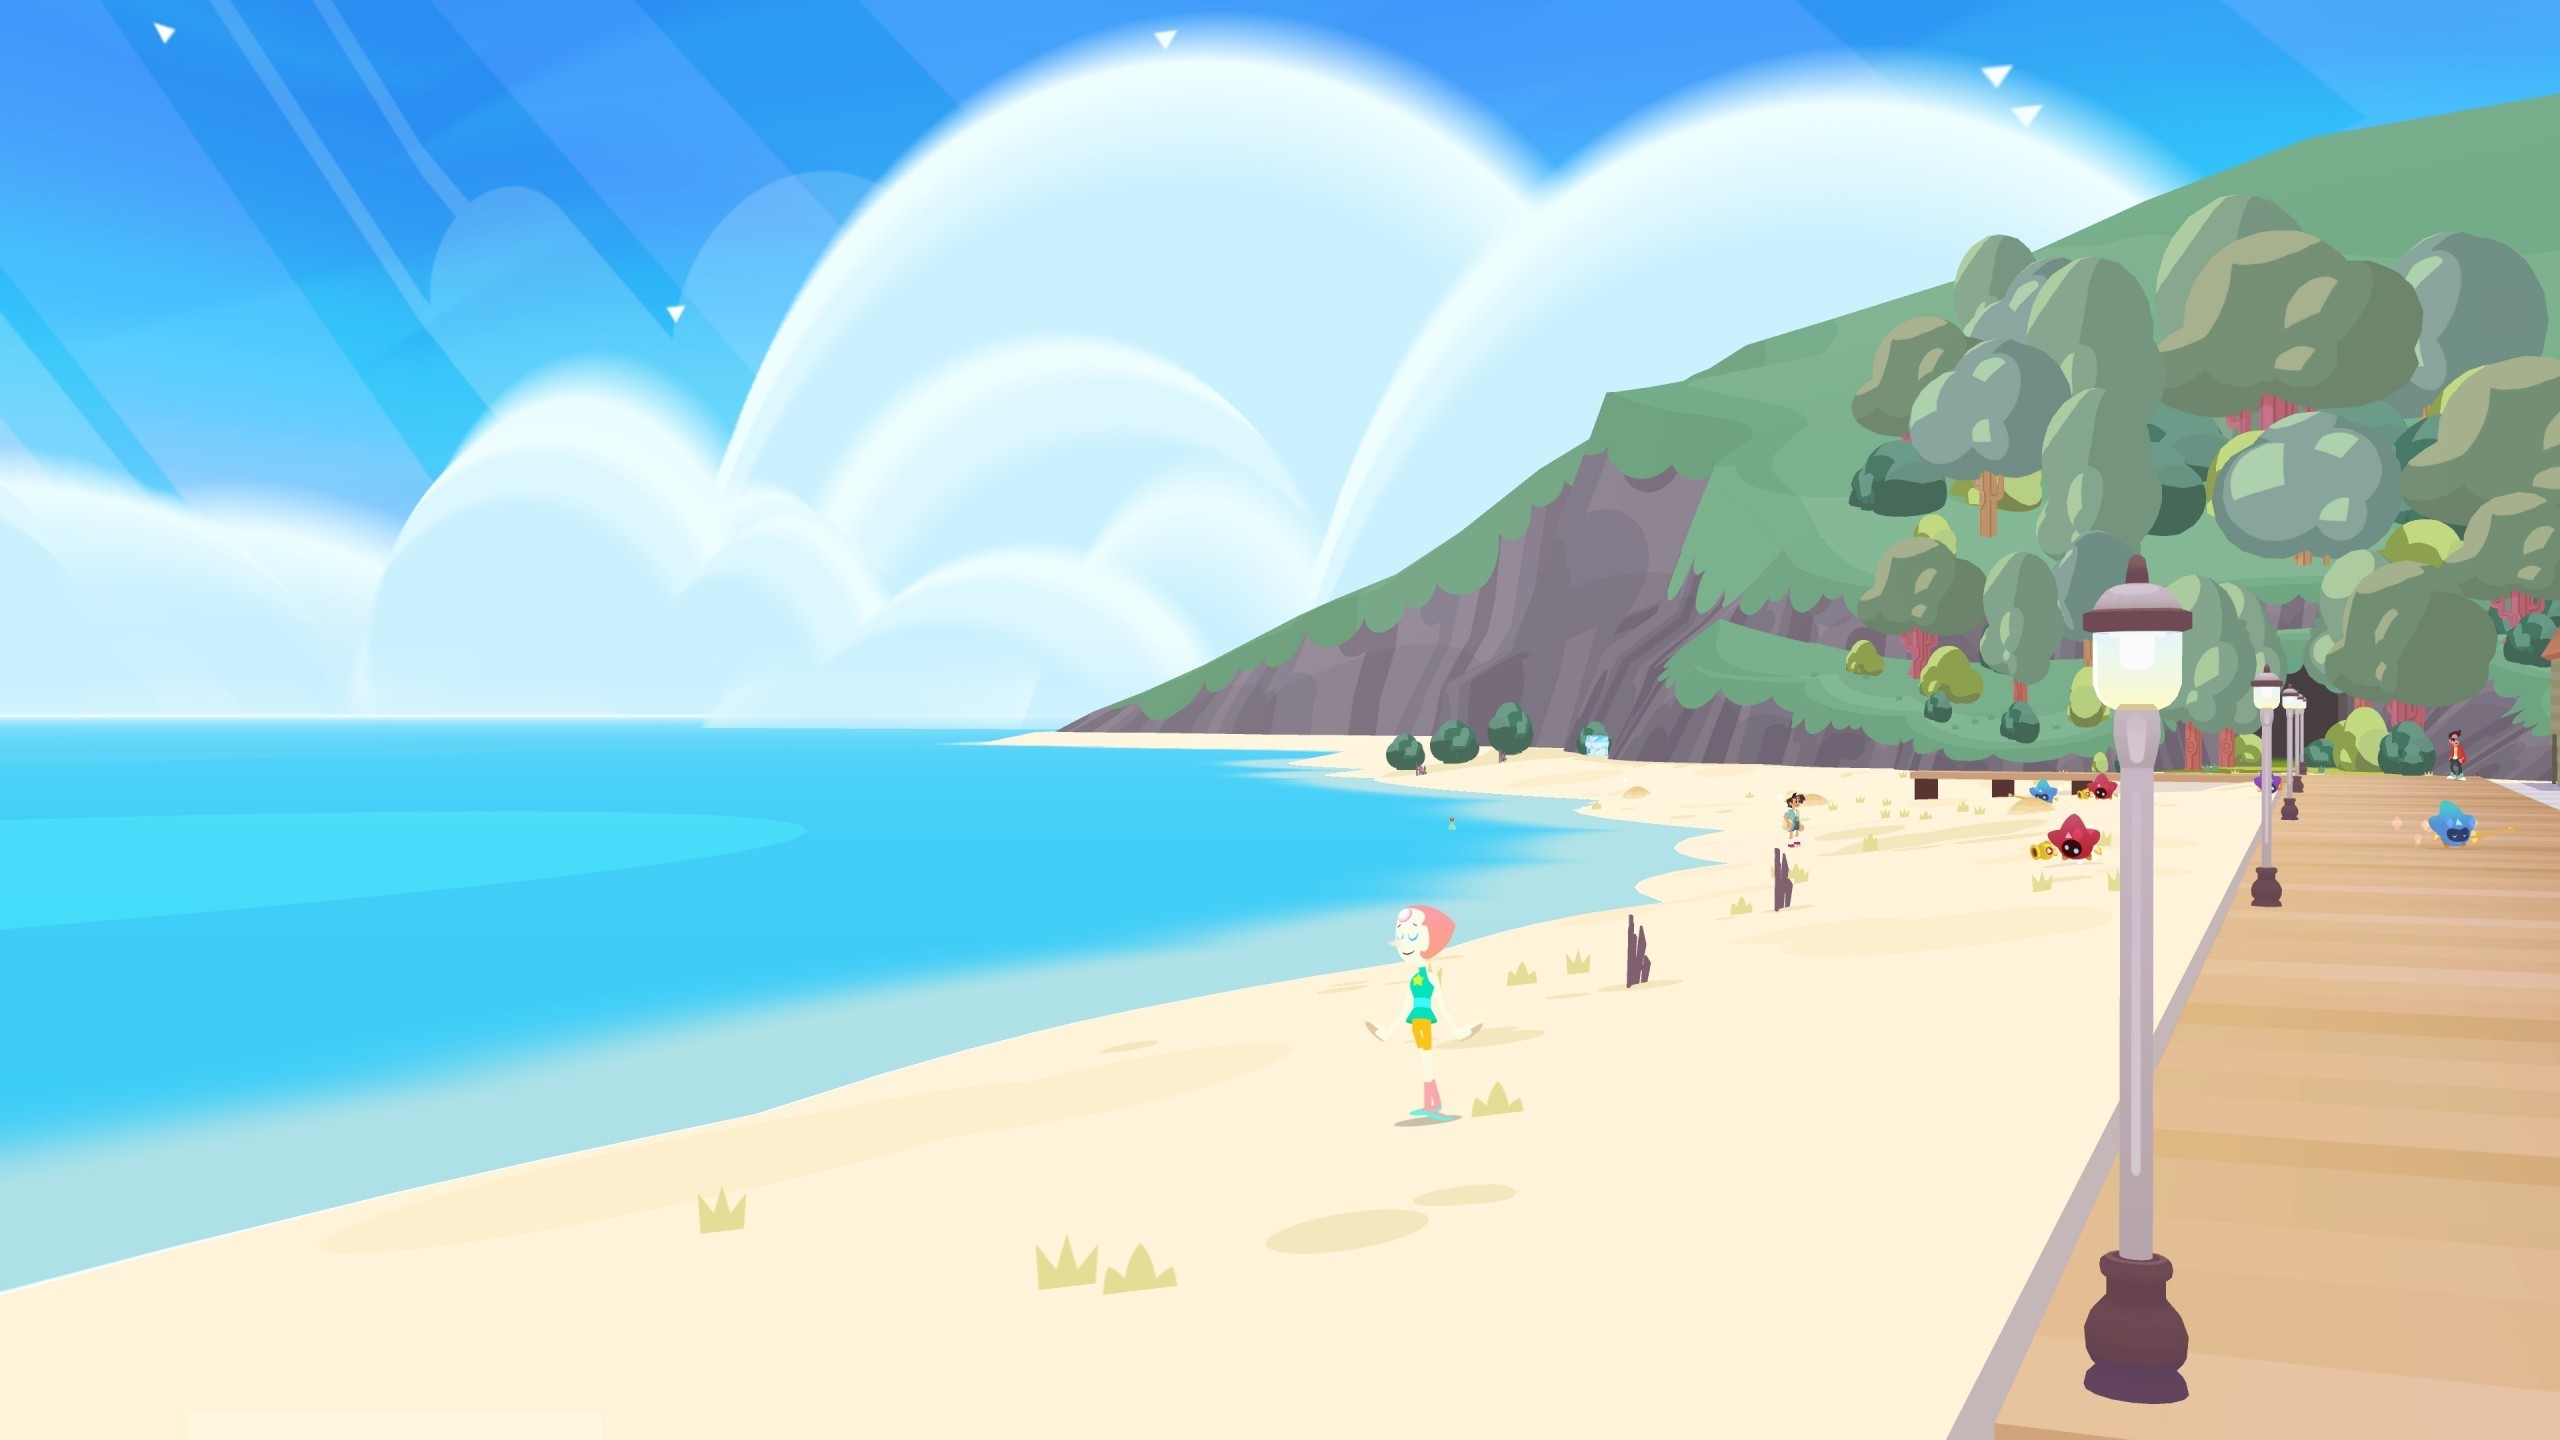 Save The Light, Beach - Steven Universe , HD Wallpaper & Backgrounds